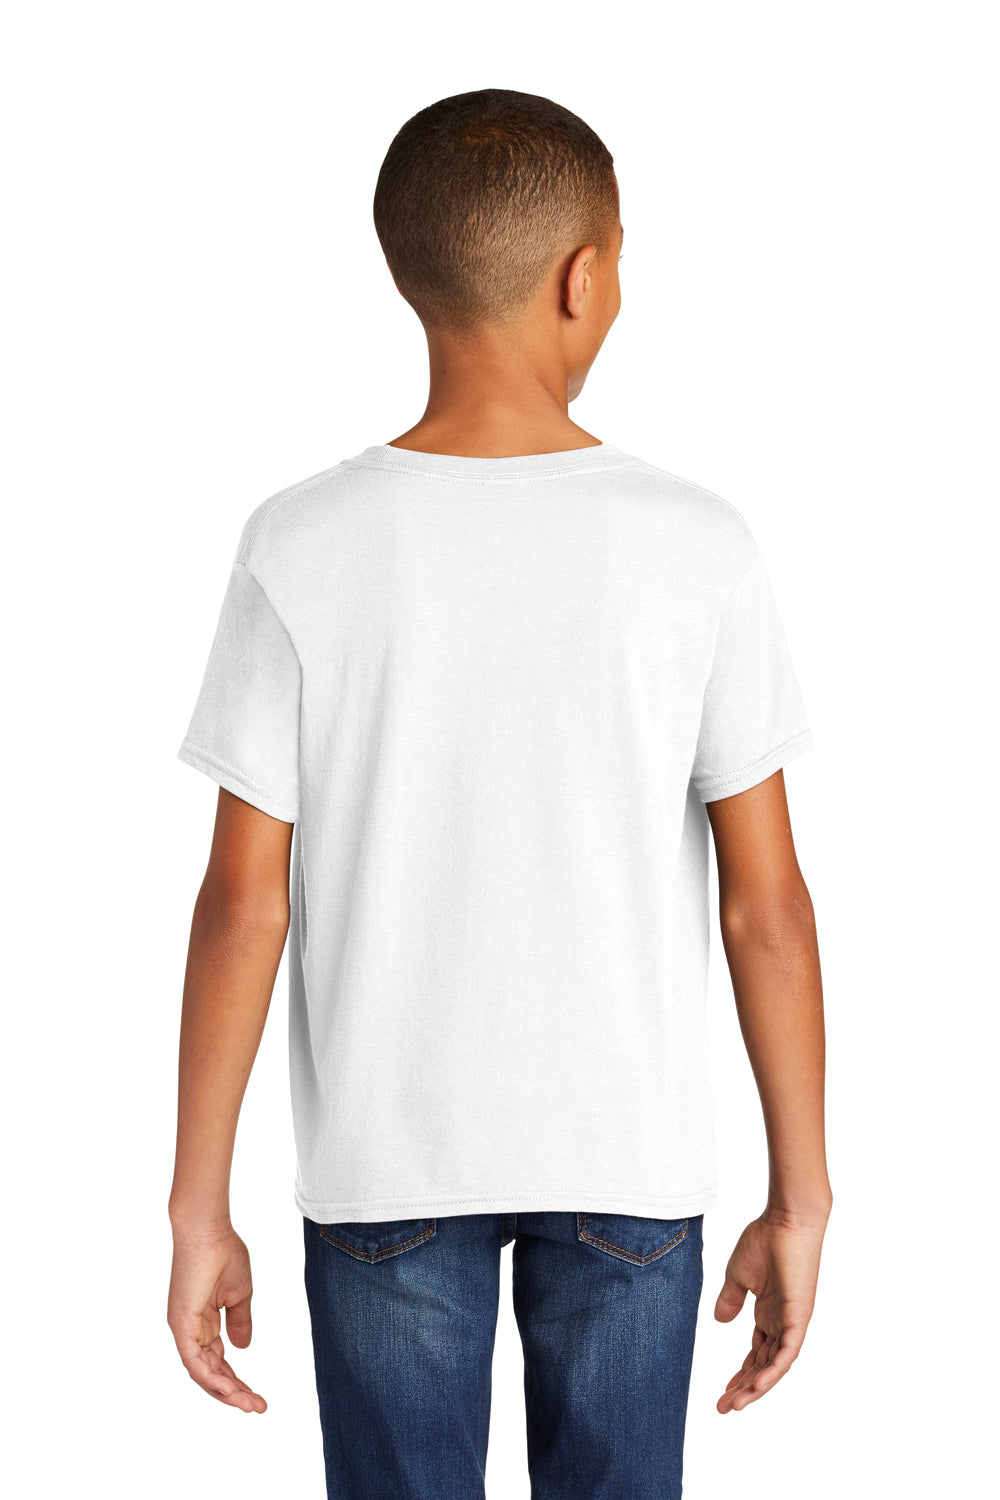 Gildan Youth Softstyle Short Sleeve Crewneck T-Shirt White Back